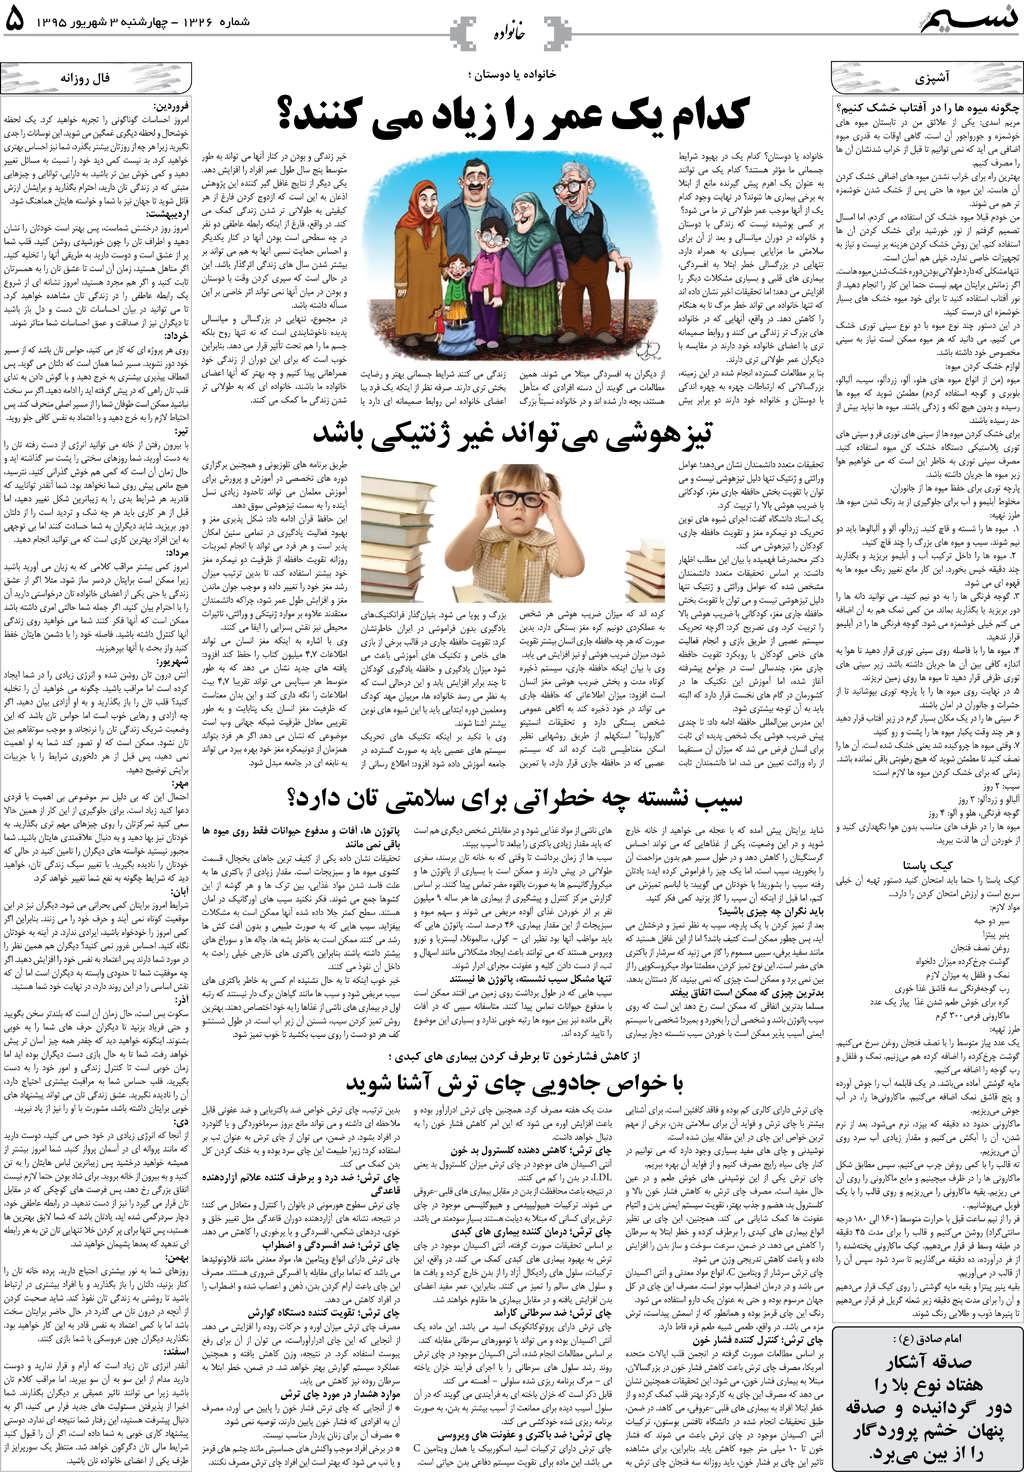 صفحه خانواده روزنامه نسیم شماره 1326